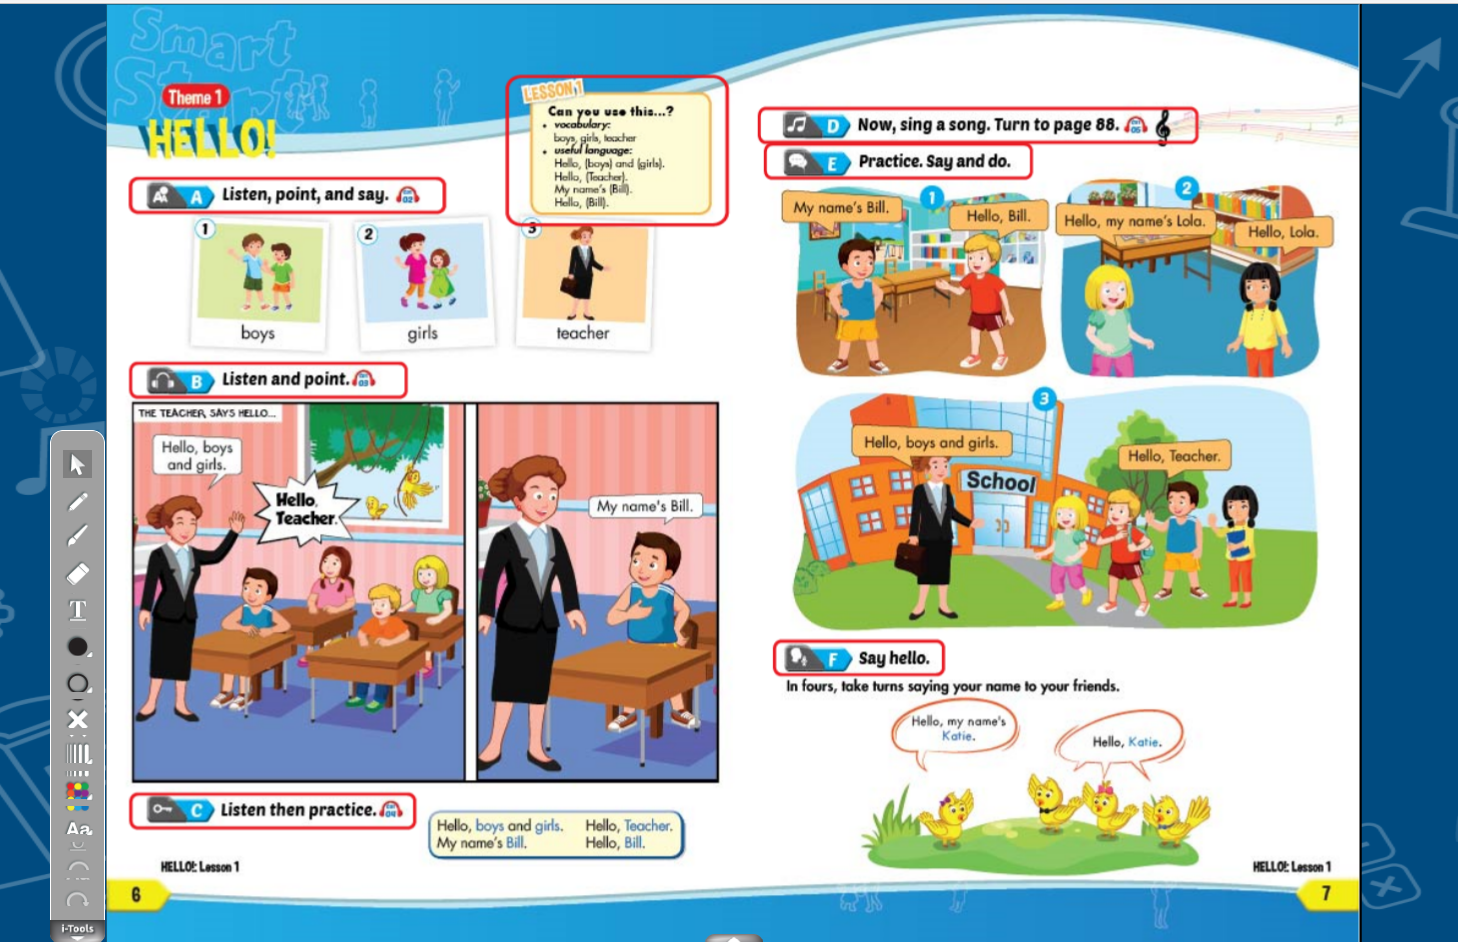 Hình ảnh [APP] i-Learn Smart Start Level 1 - Ứng dụng phần mềm tương tác sách học sinh